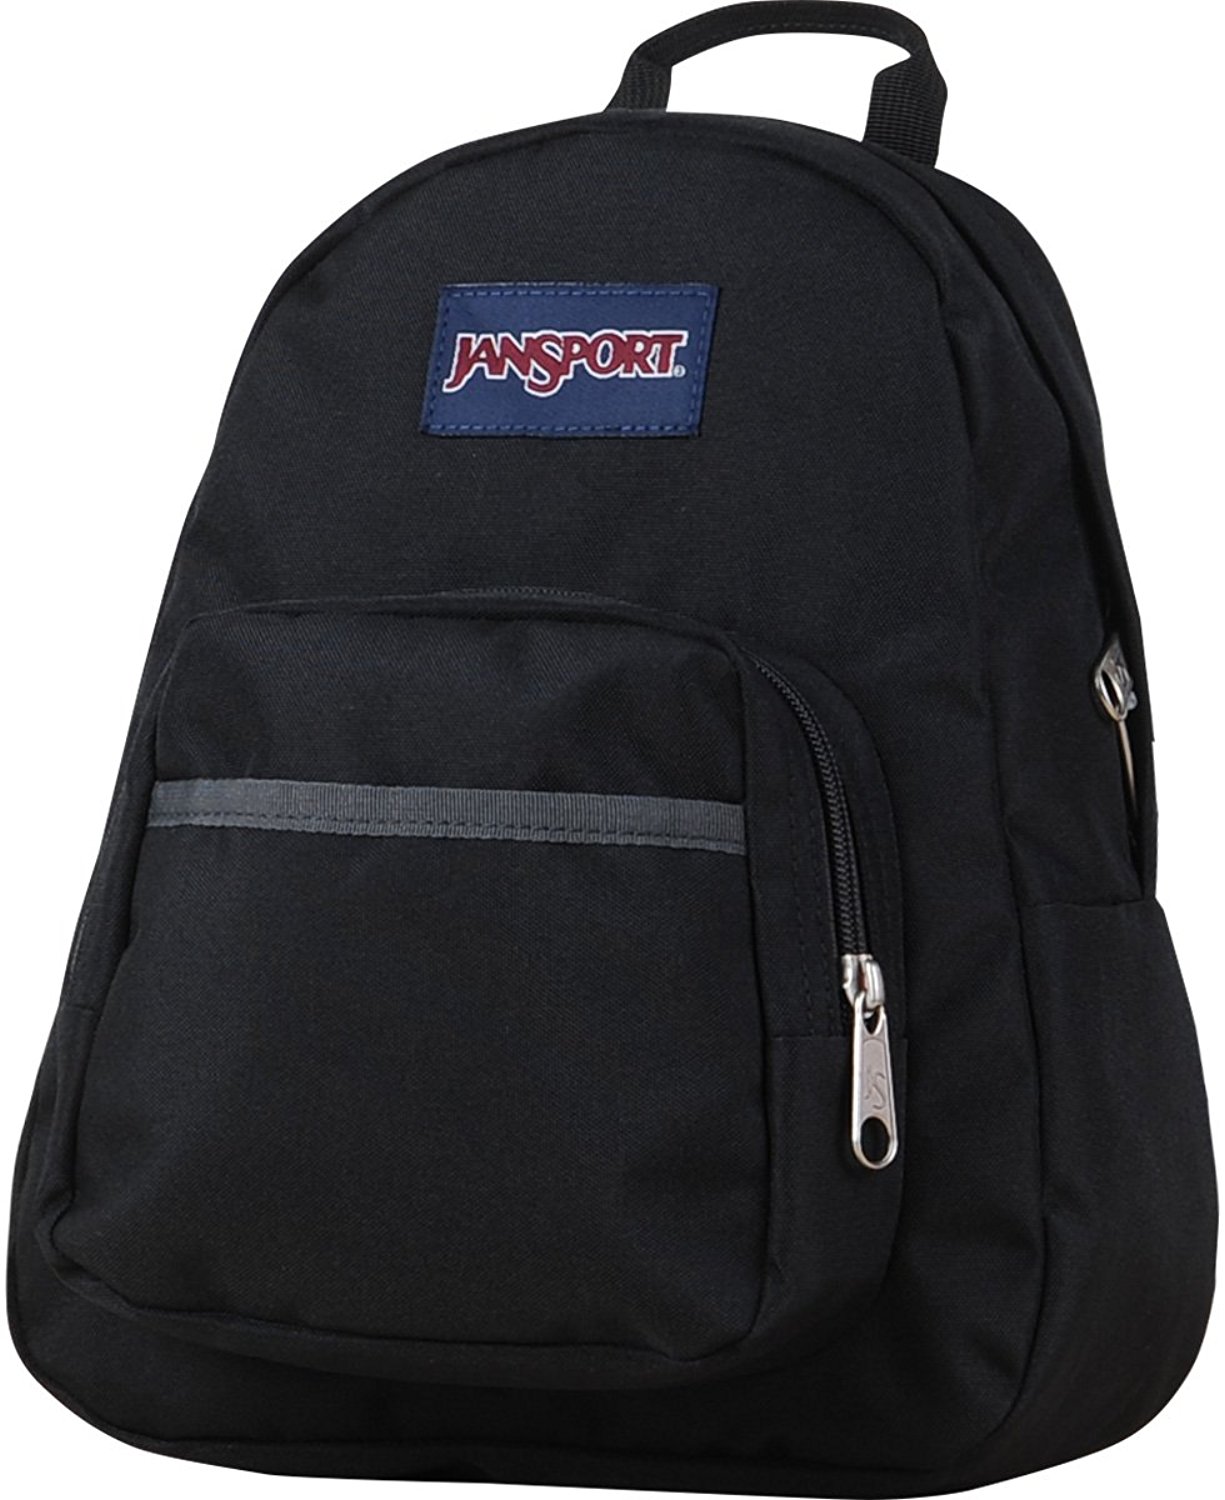 Jansport Half Pint Backpack - Black - JS00TDH6008 617931056756 | eBay